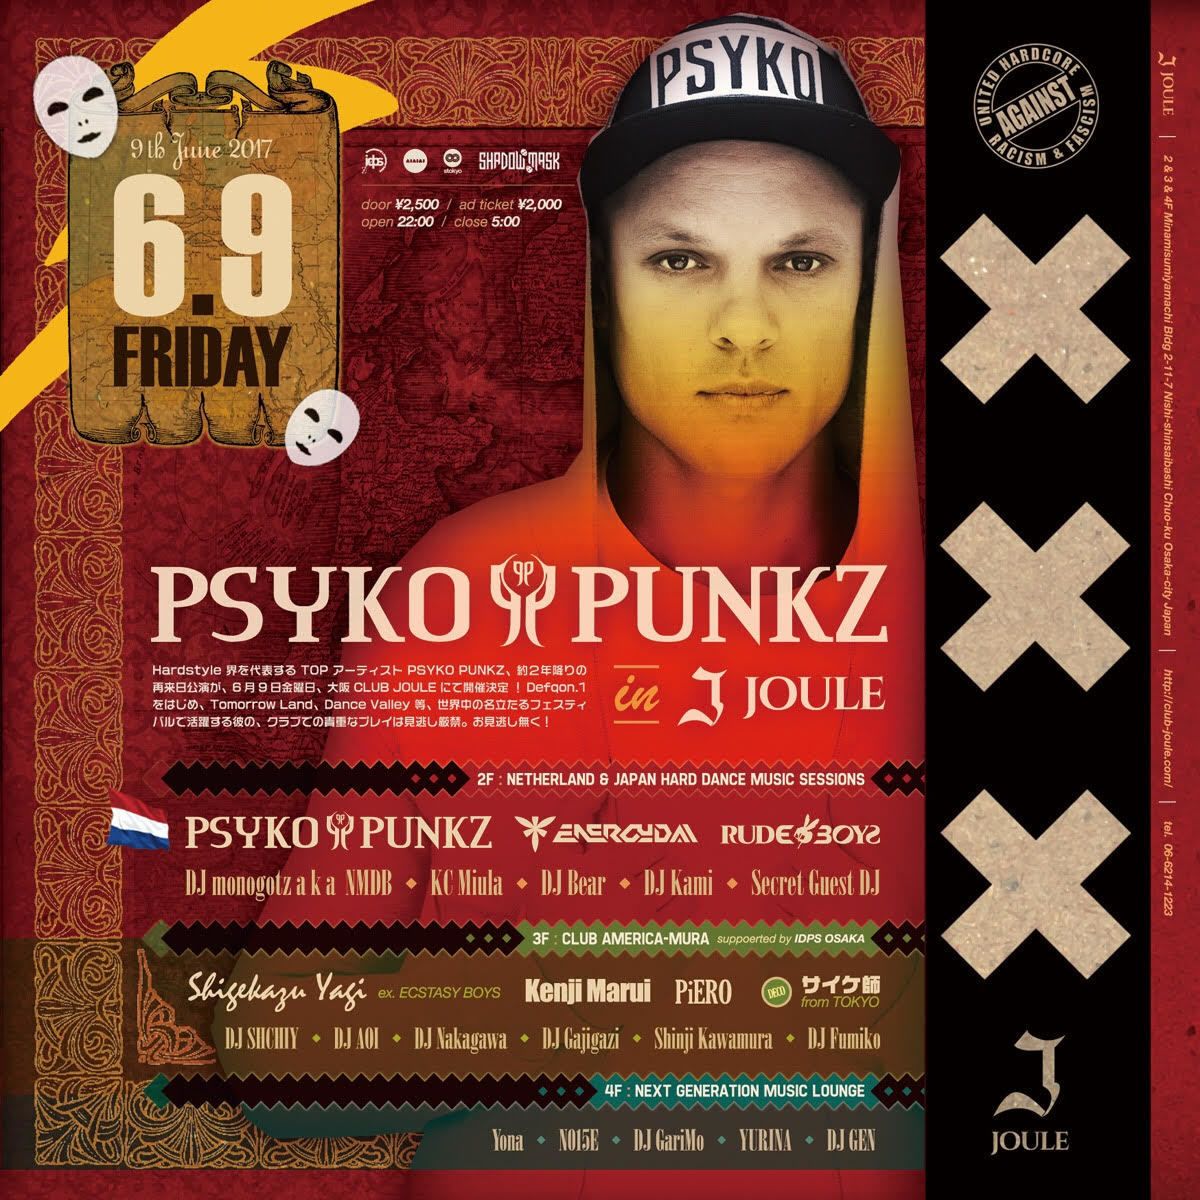 Psyko Punkz 「Wietse」Release Japan Tour!